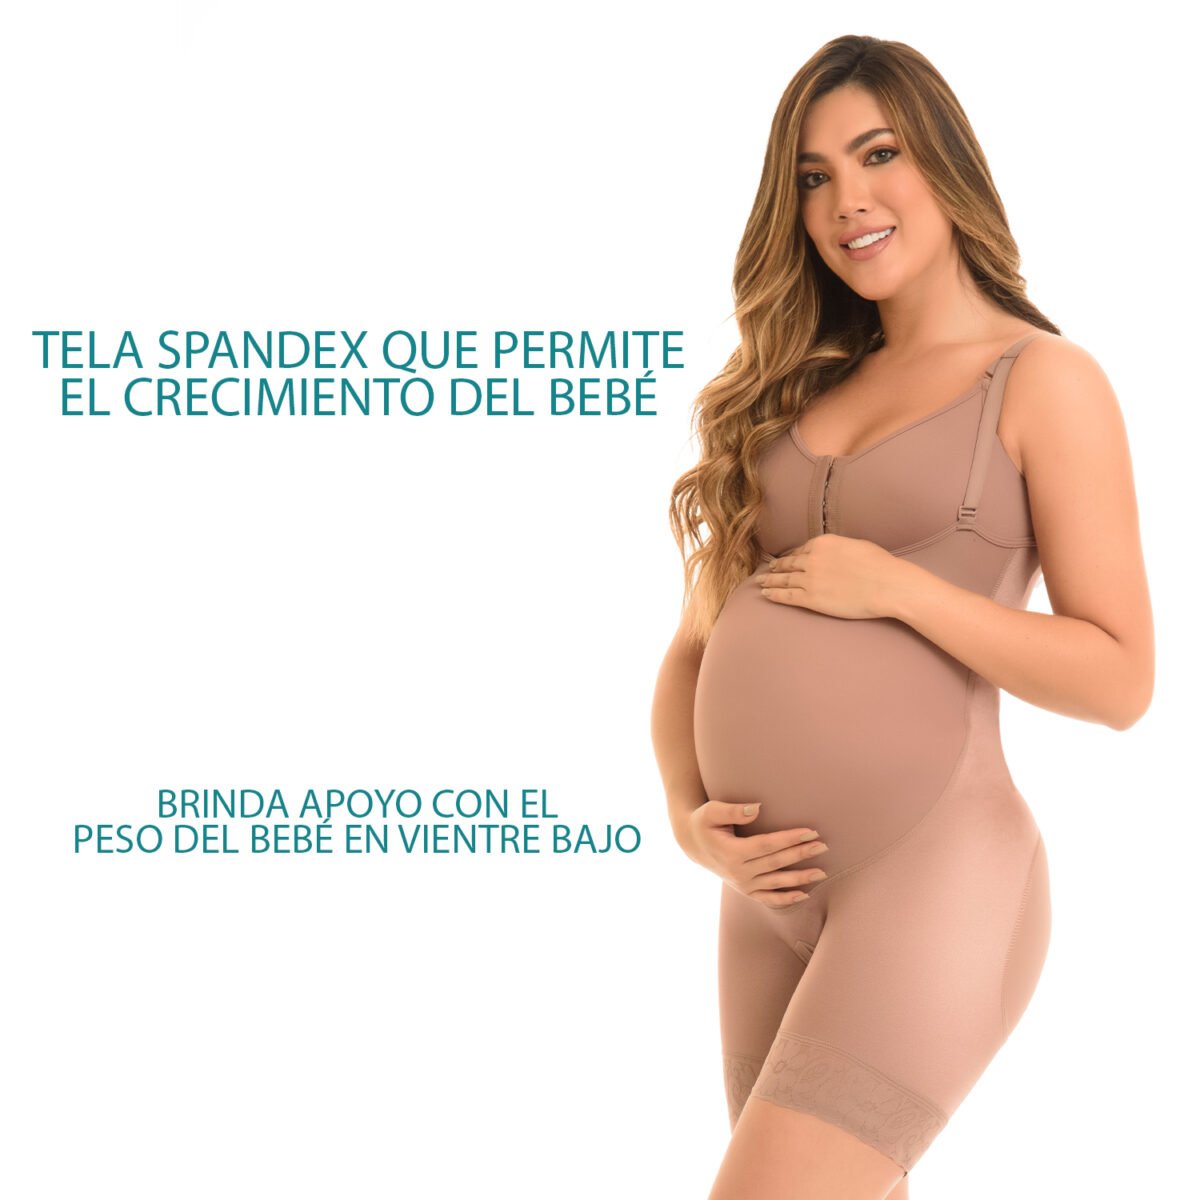 Soporte materno con zona abdominal en spandex que se adapta al crecimiento del vientre, cuenta también con un refuerzo en la zona pélvica para dar soporte.